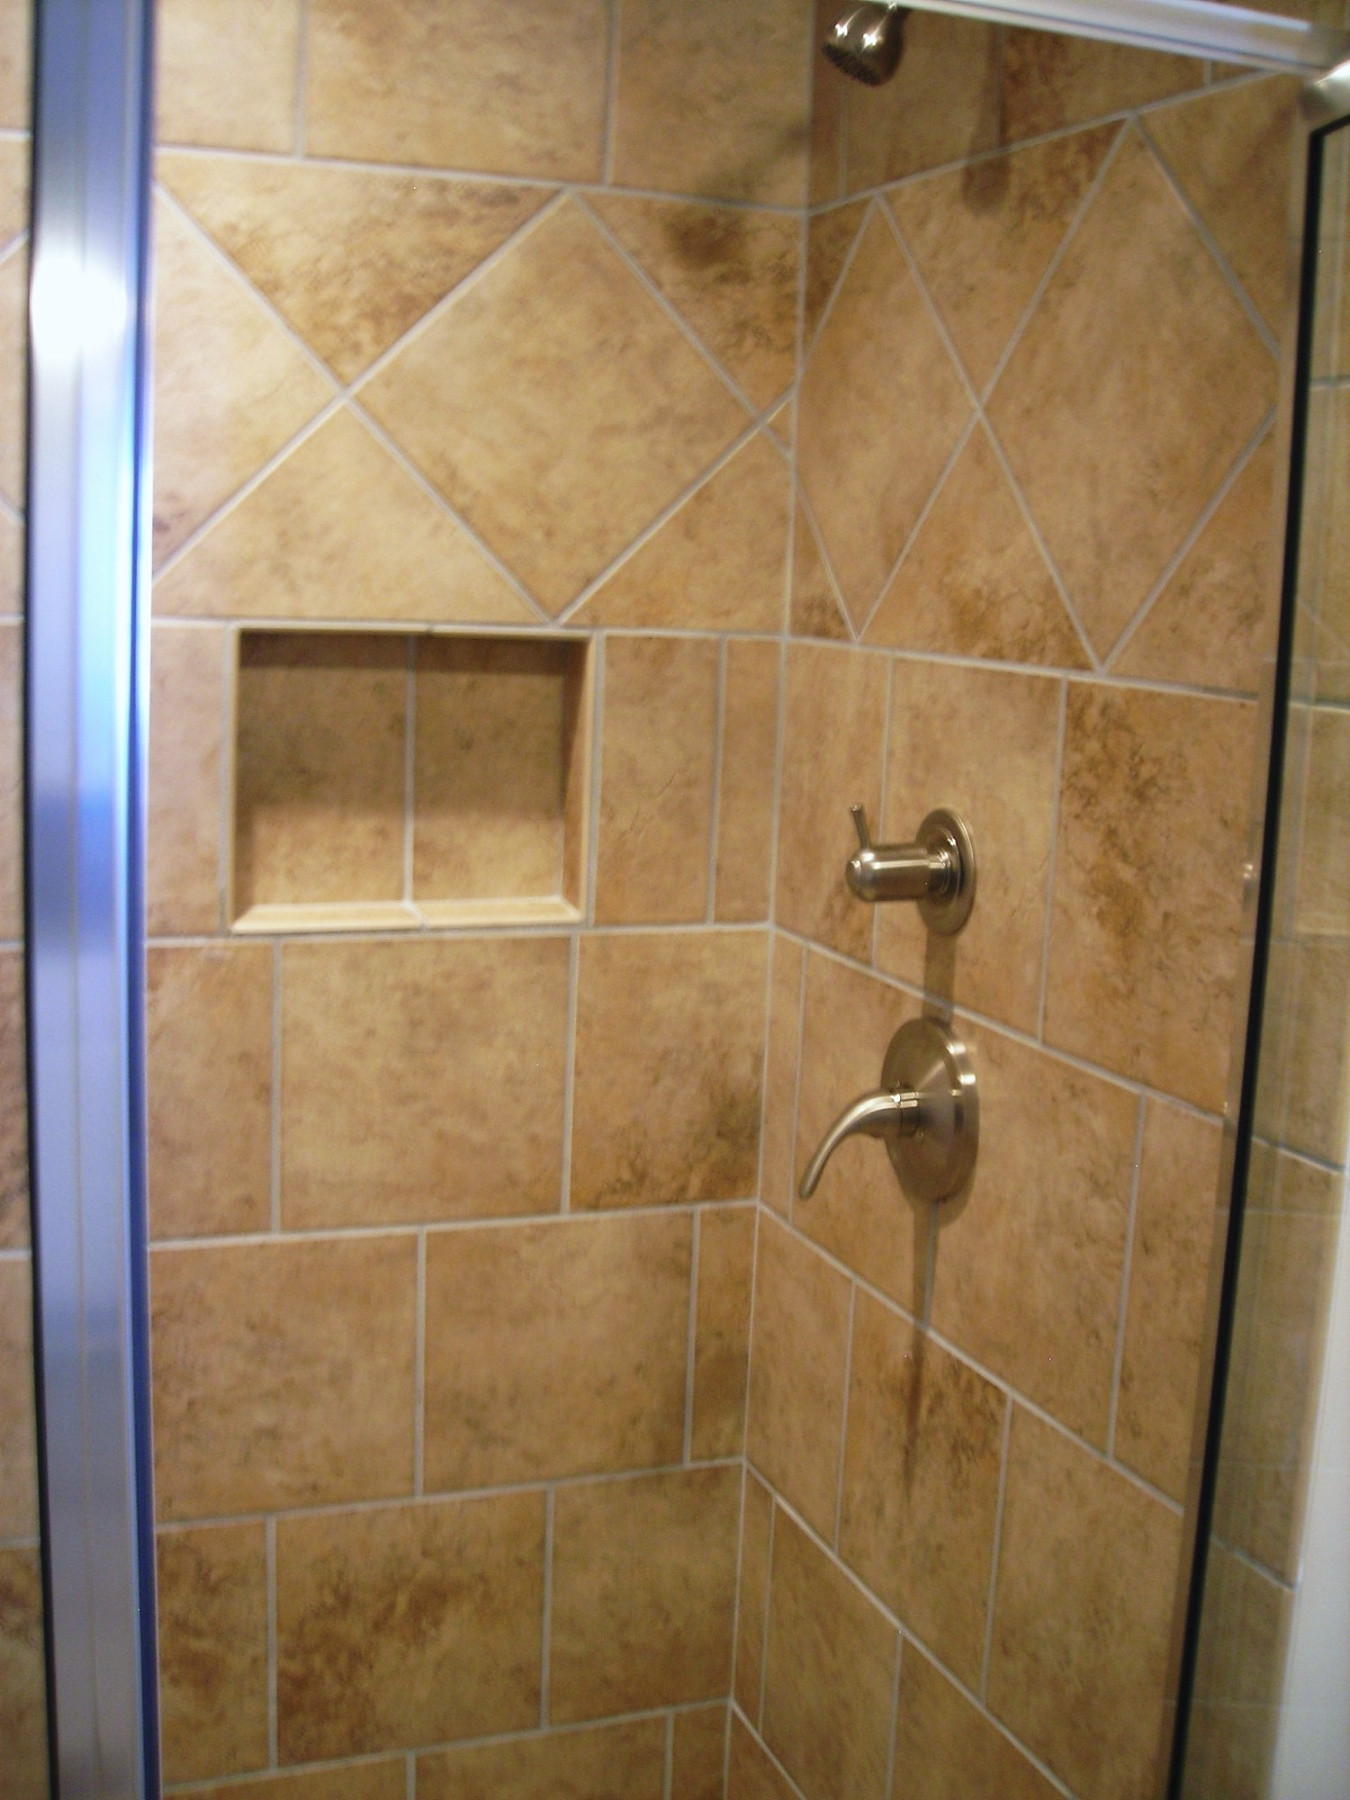 Bathroom Shower Tile Gallery
 Bathroom Interesting Shower Tile Designs With Fascinating